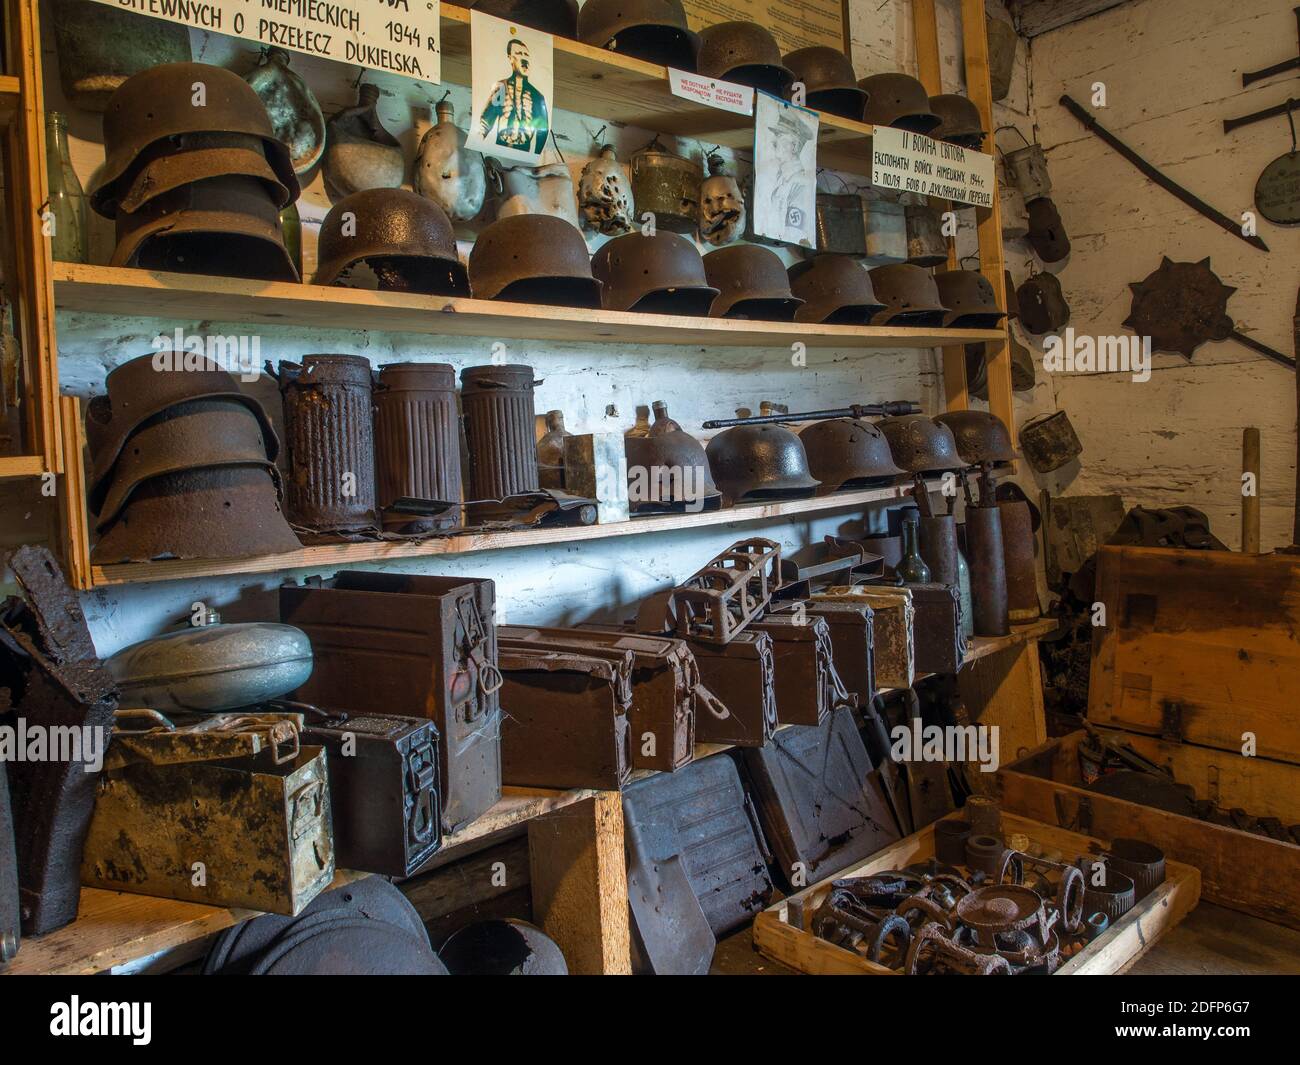 Zyndranowa, Polen - 13. August 2017: Sammlung alter Metallhelme, Schiffe und anderer Kriegszubehör im Lemko-Kulturmuseum Stockfoto